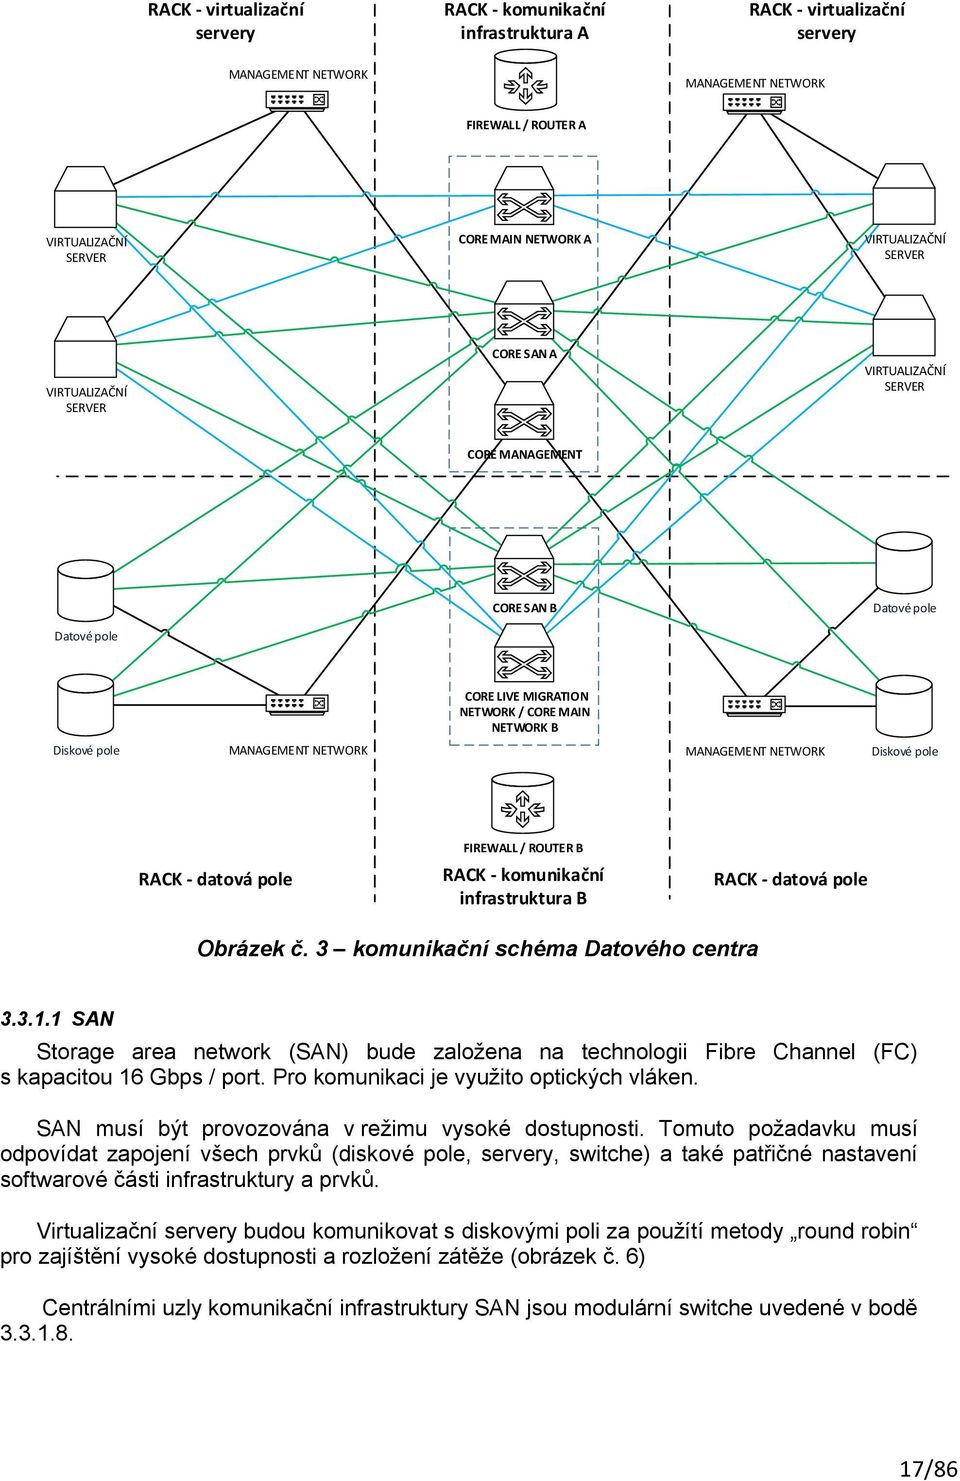 NETWORK MANAGEMENT NETWORK Diskové pole FIREWALL / ROUTER B RACK - datová pole RACK - komunikační infrastruktura B RACK - datová pole Obrázek č. 3 komunikační schéma Datového centra 3.3.1.